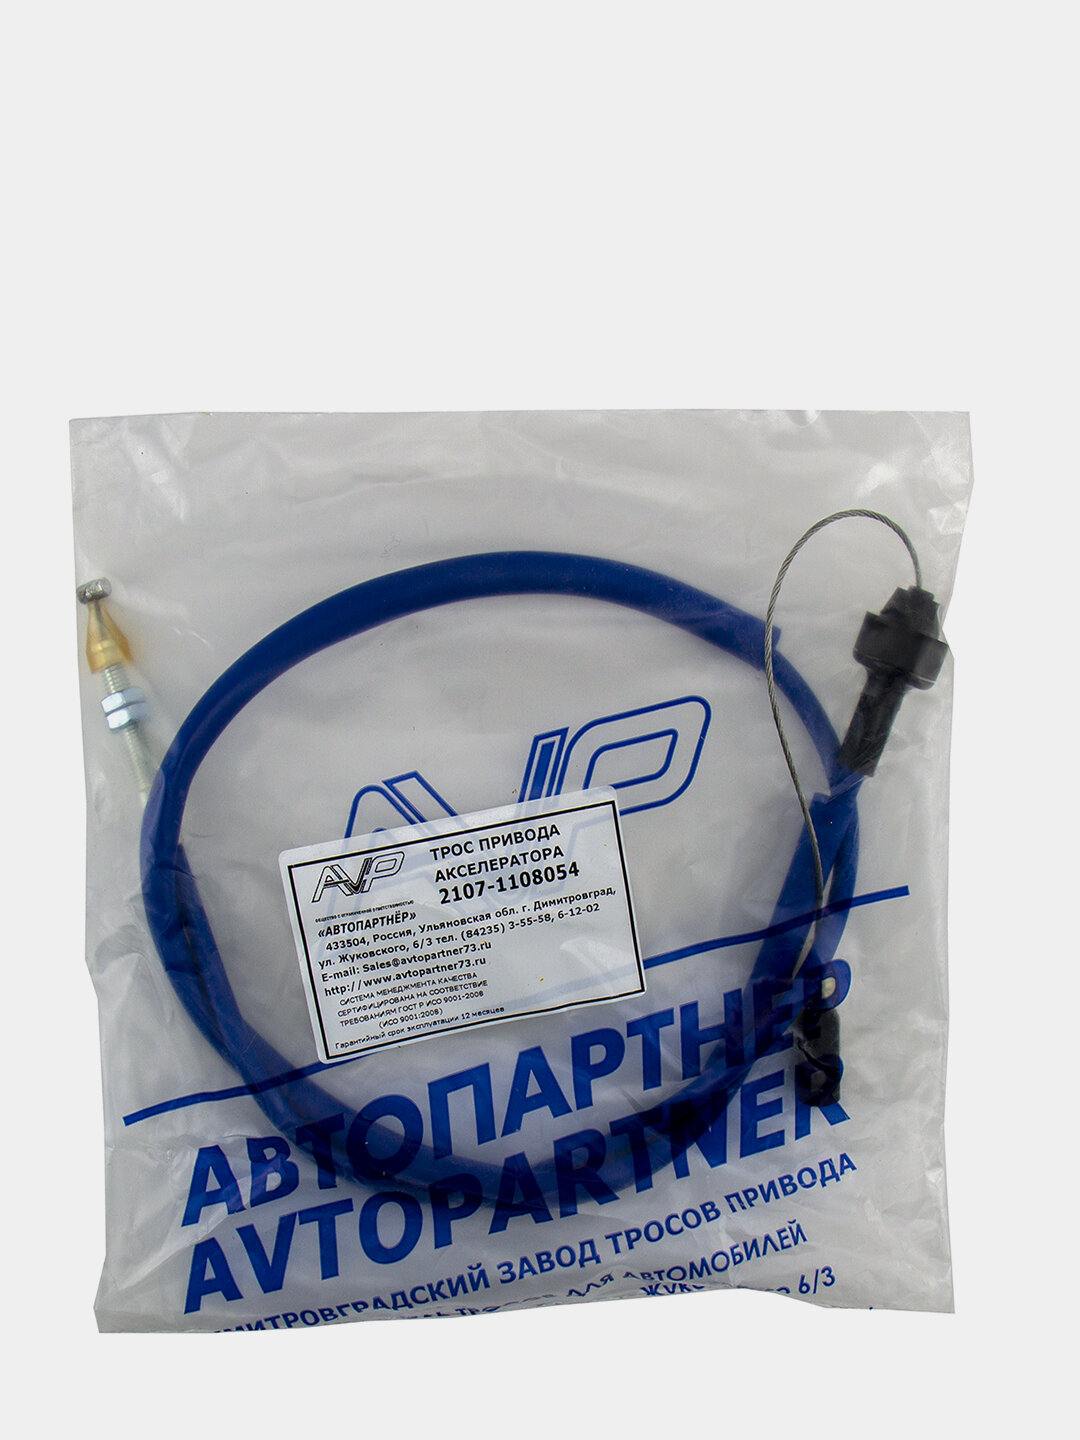 Трос привода акселератора AVP AS2107F инж. Фирменный, ориг. №: 2107-1108054 (автопартнёр)